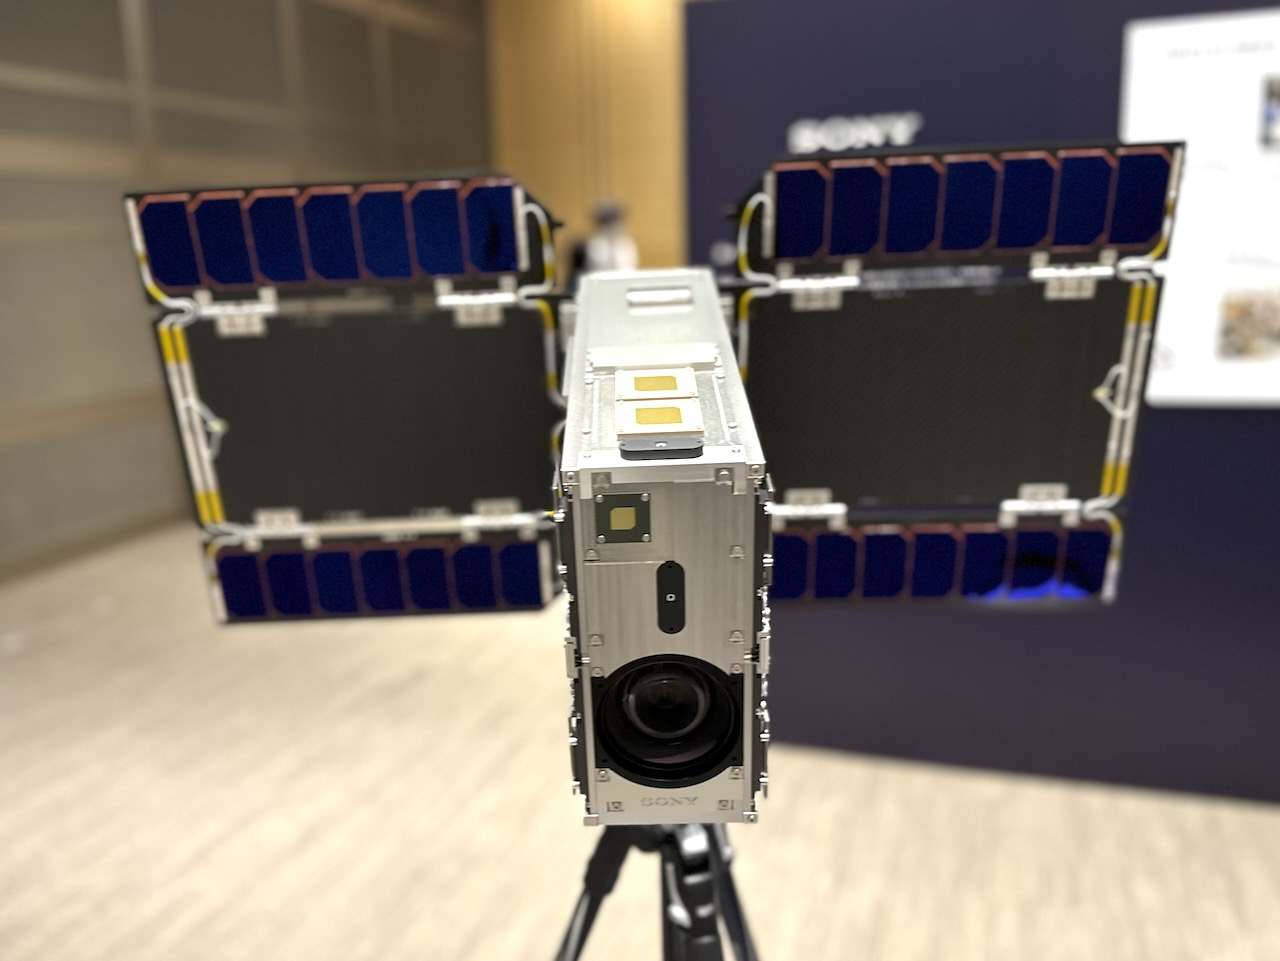 ソニーの人工衛星「EYE」の実物大モックアップがSPACETIDE 2023イベントに展示された